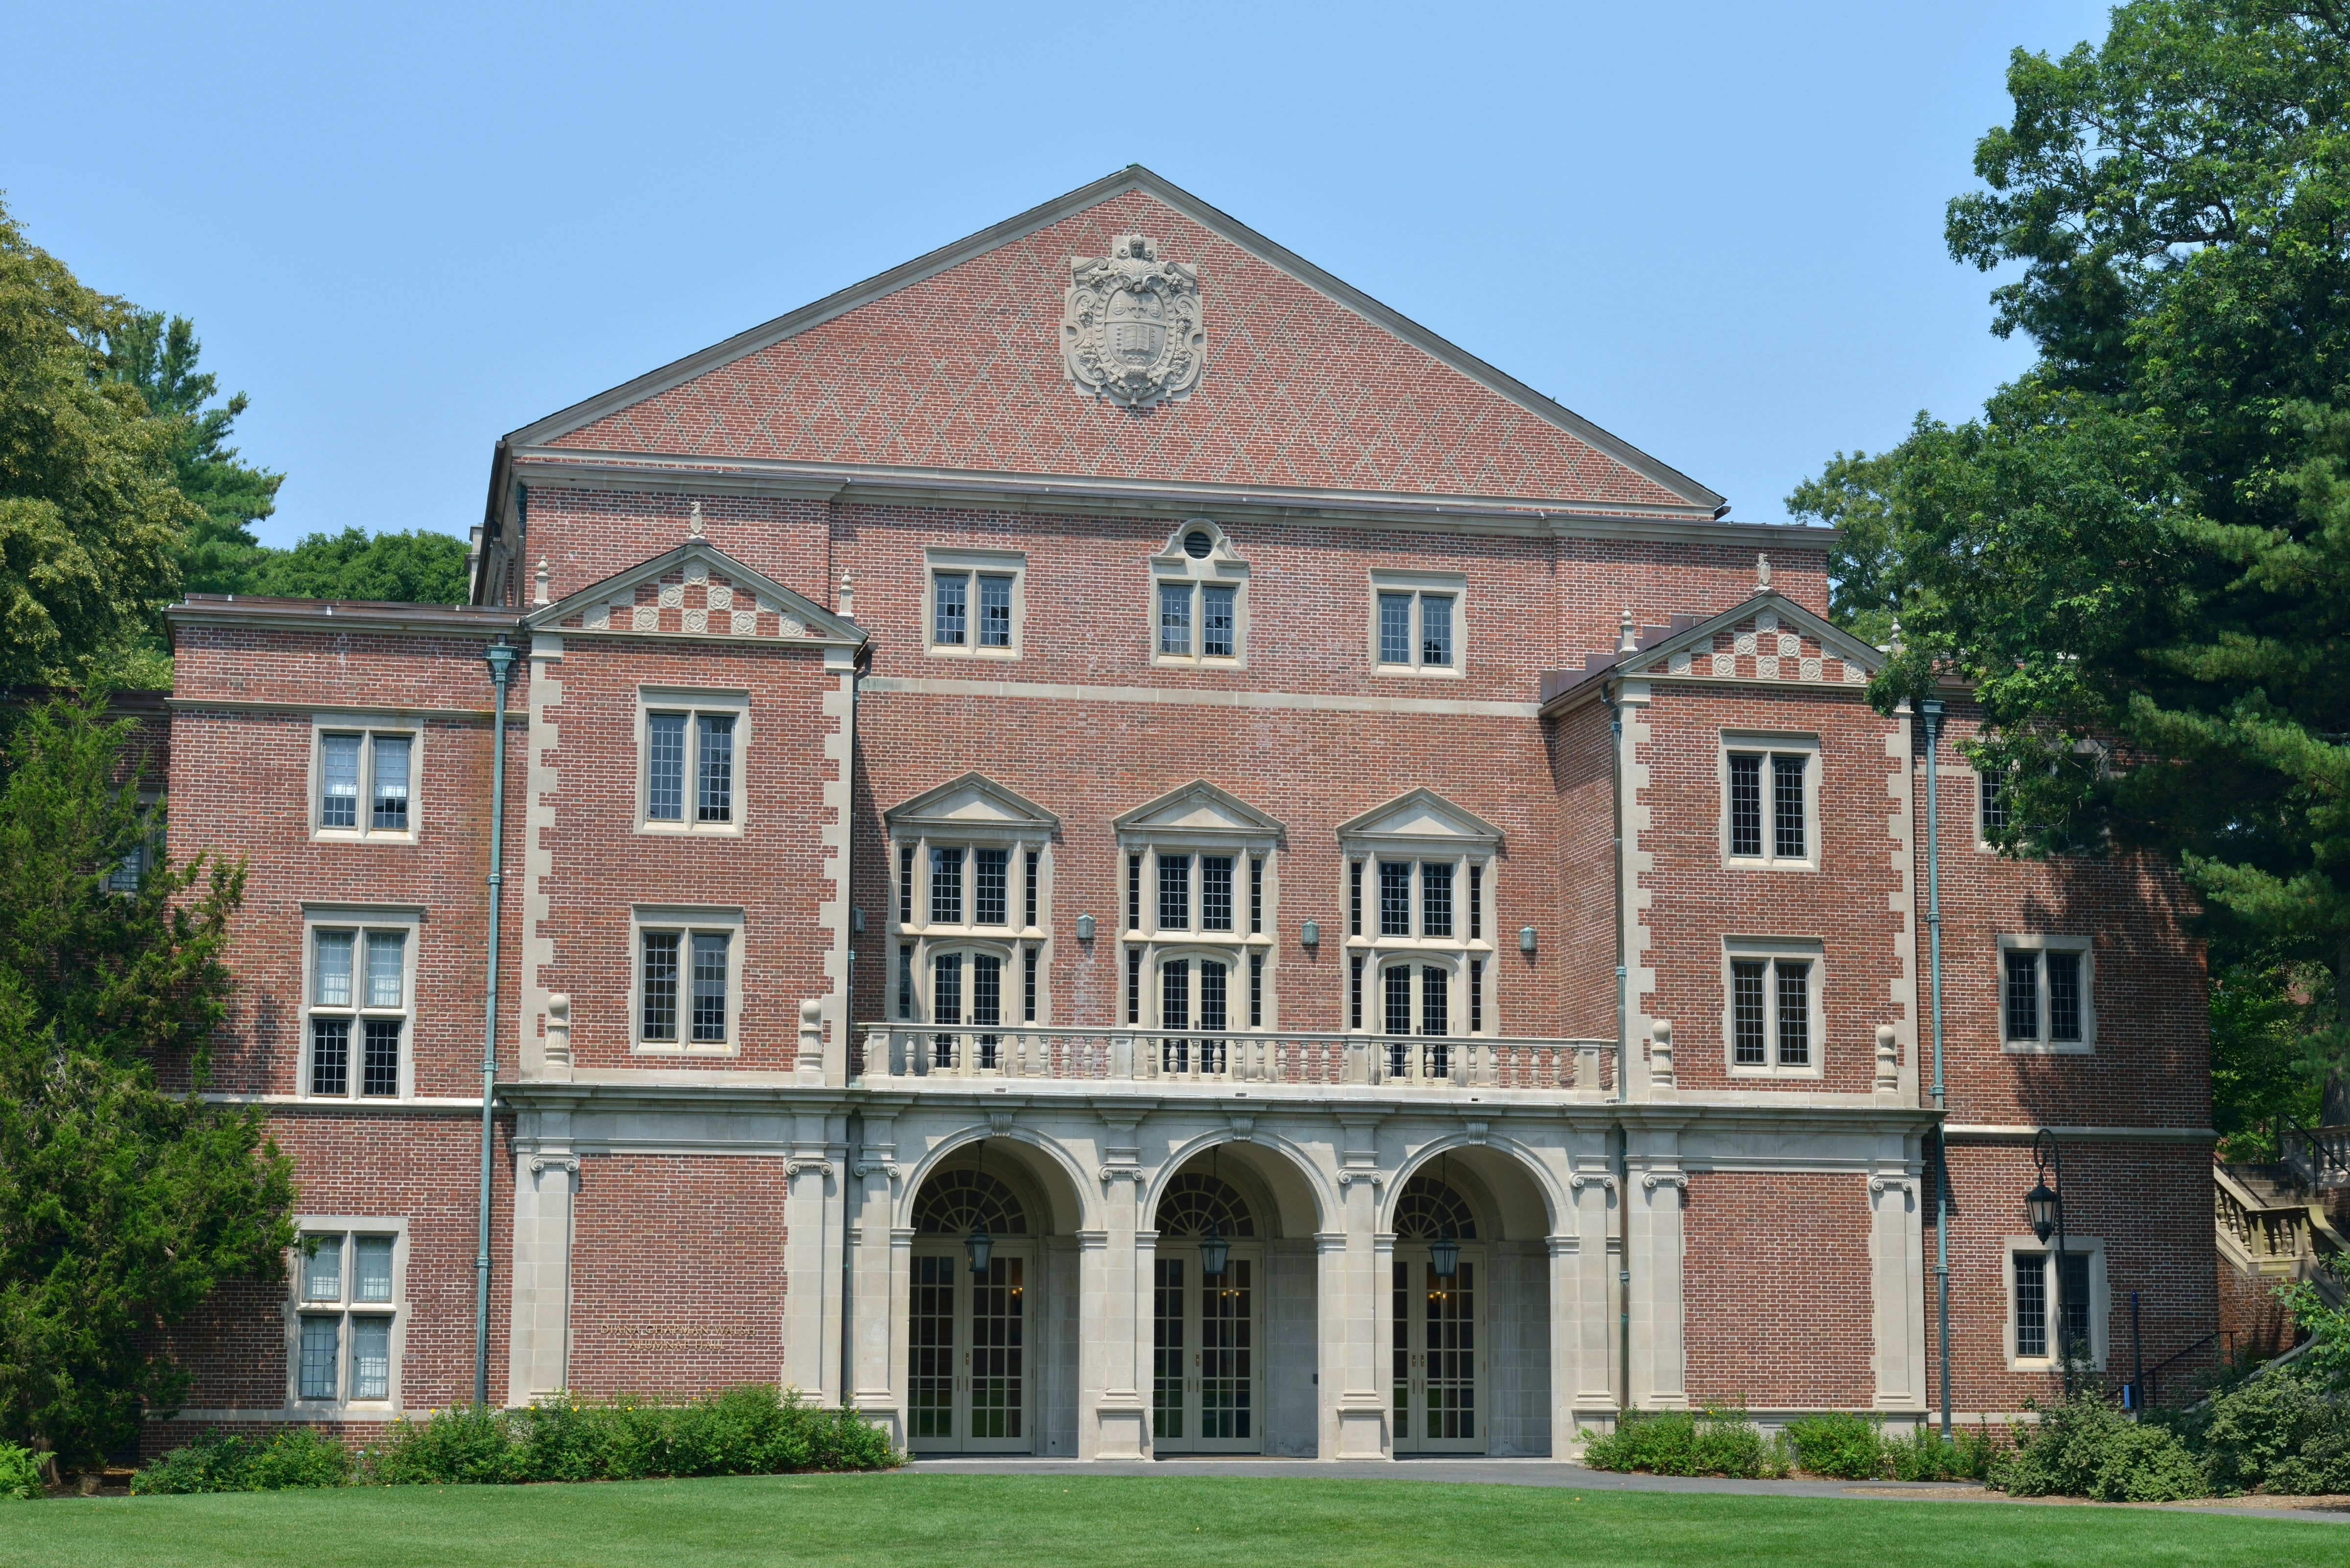 Building in Wellesley College